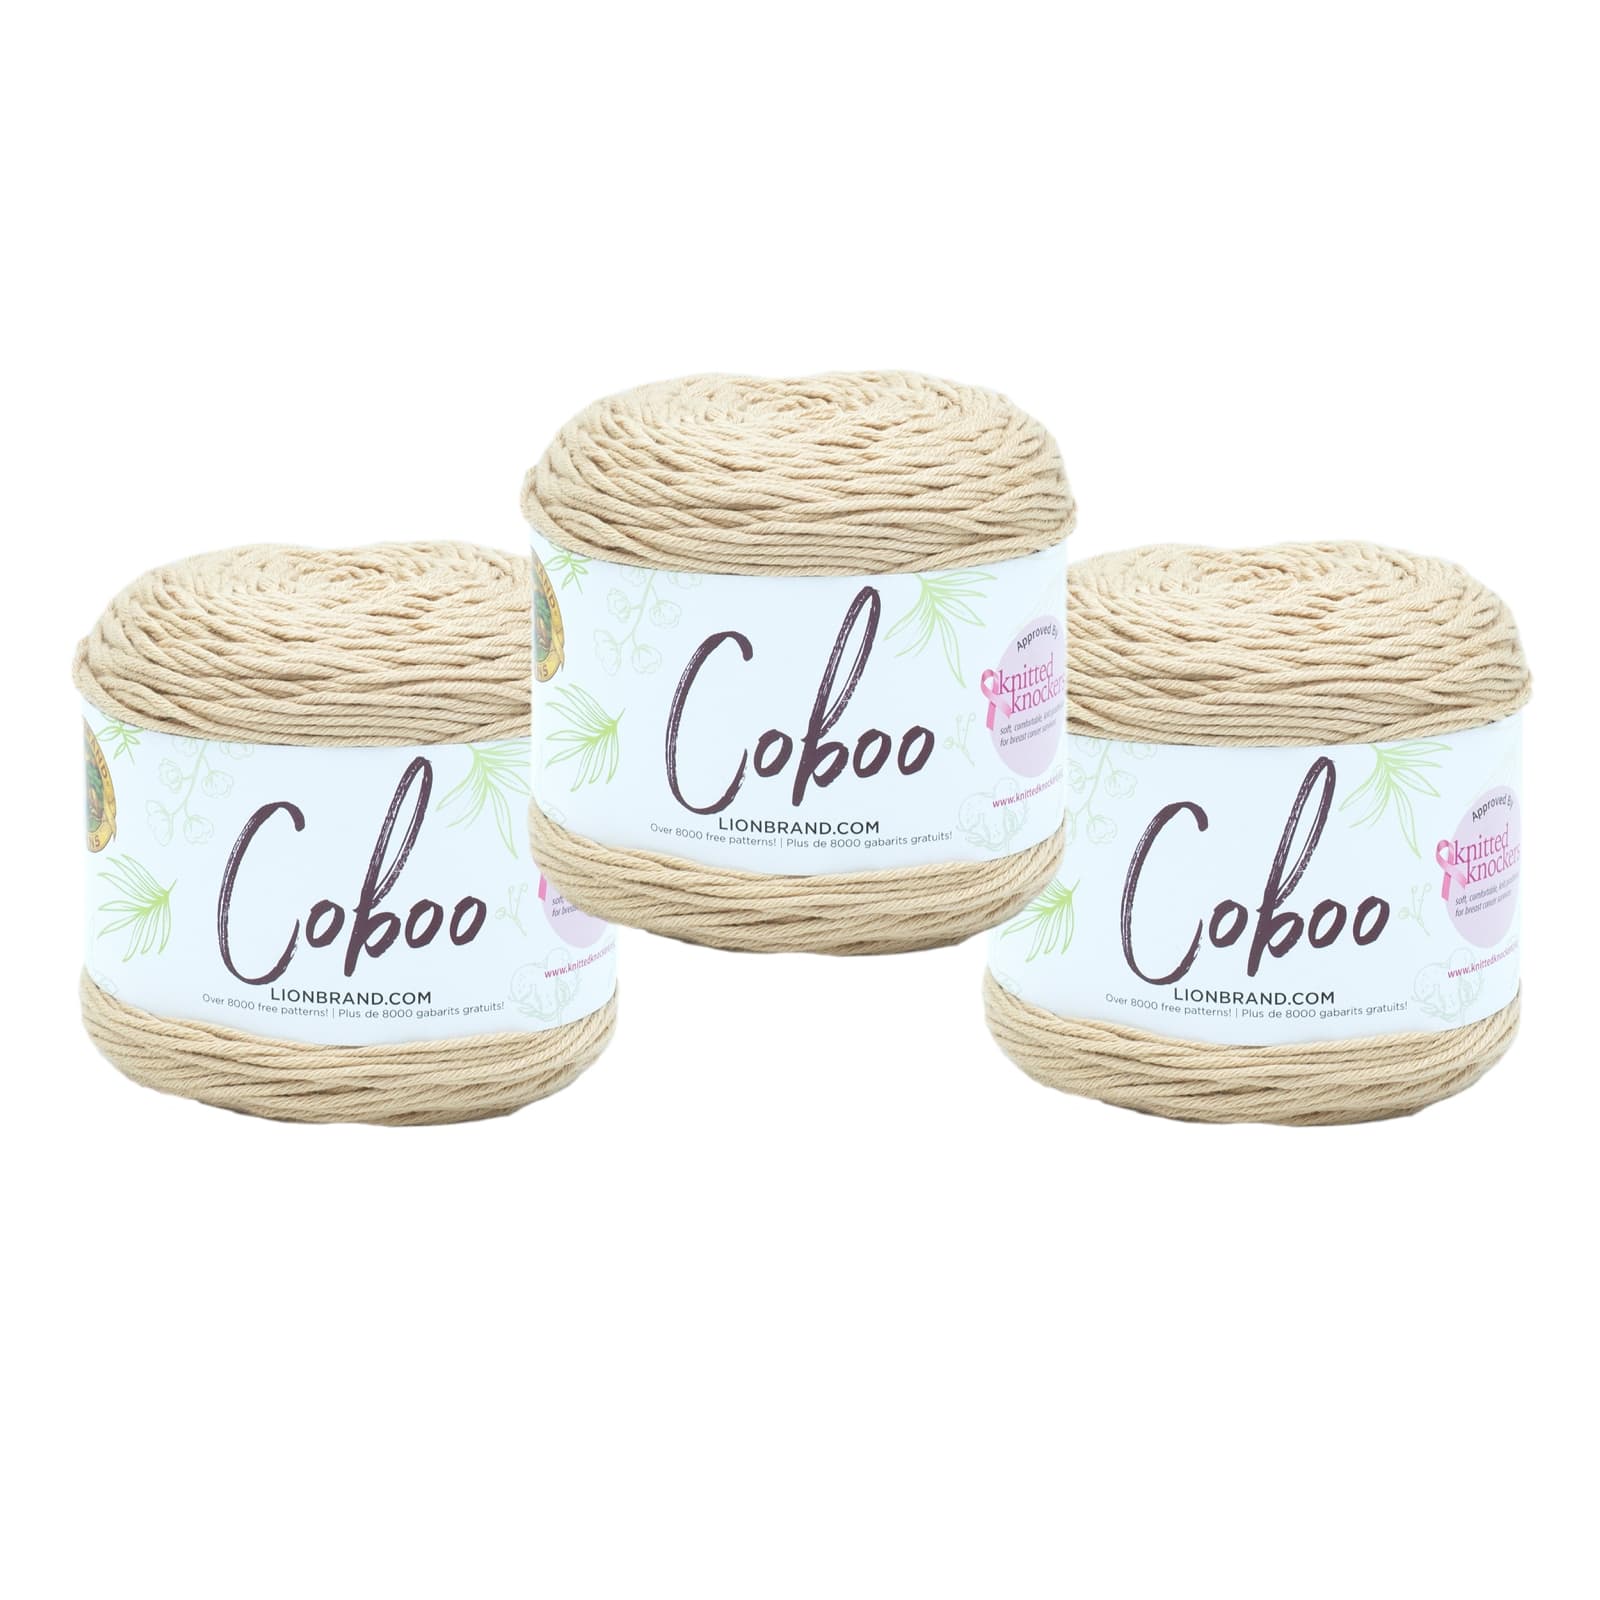 LB Coboo - Crochet Stores Inc.